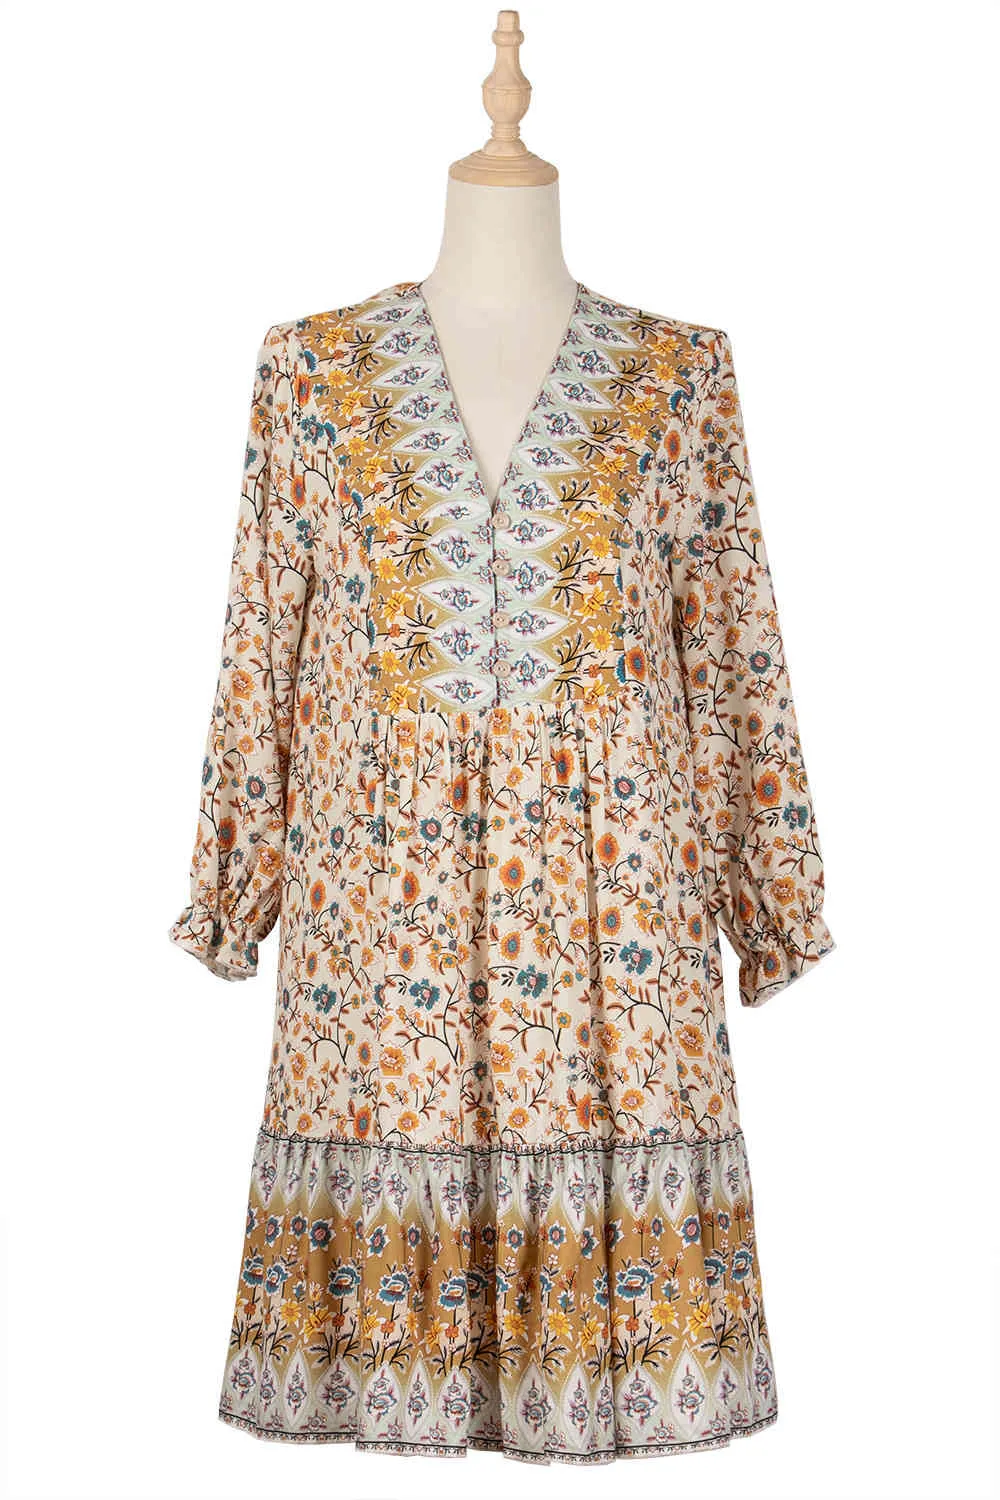 Frühlingsdruck Vintage Kleid Frauen Casual Schmetterlingsärmel V-Ausschnitt Boho Kurzes Kleid für Frauen Mode Lose Sommerkleider 210521